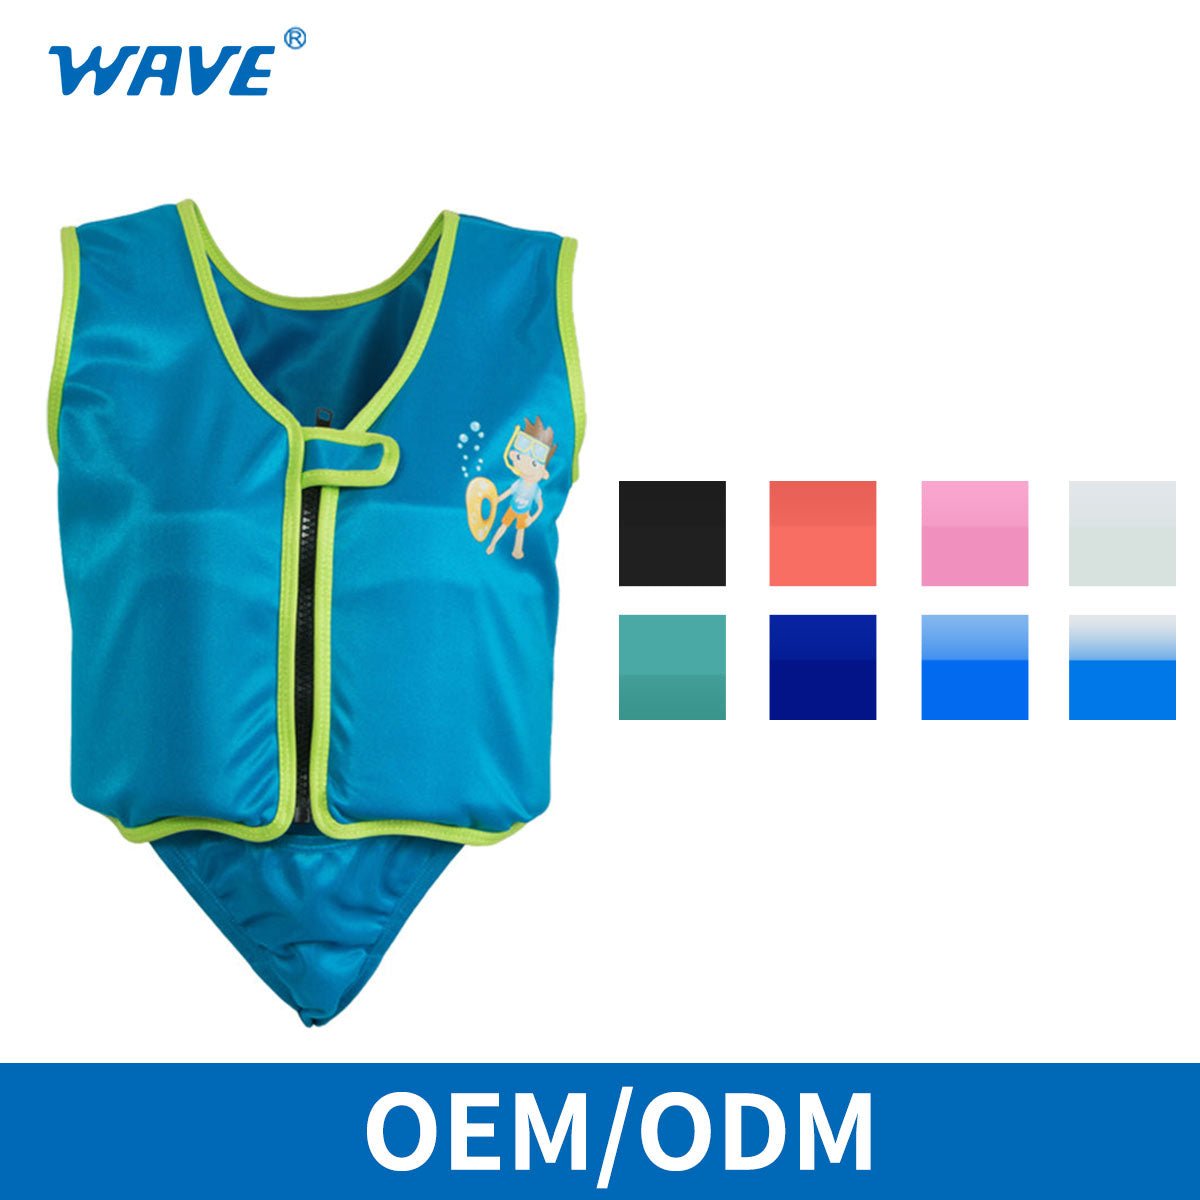 Float Suit	Manufacturer Child Swim Safety Vest Life Jacket